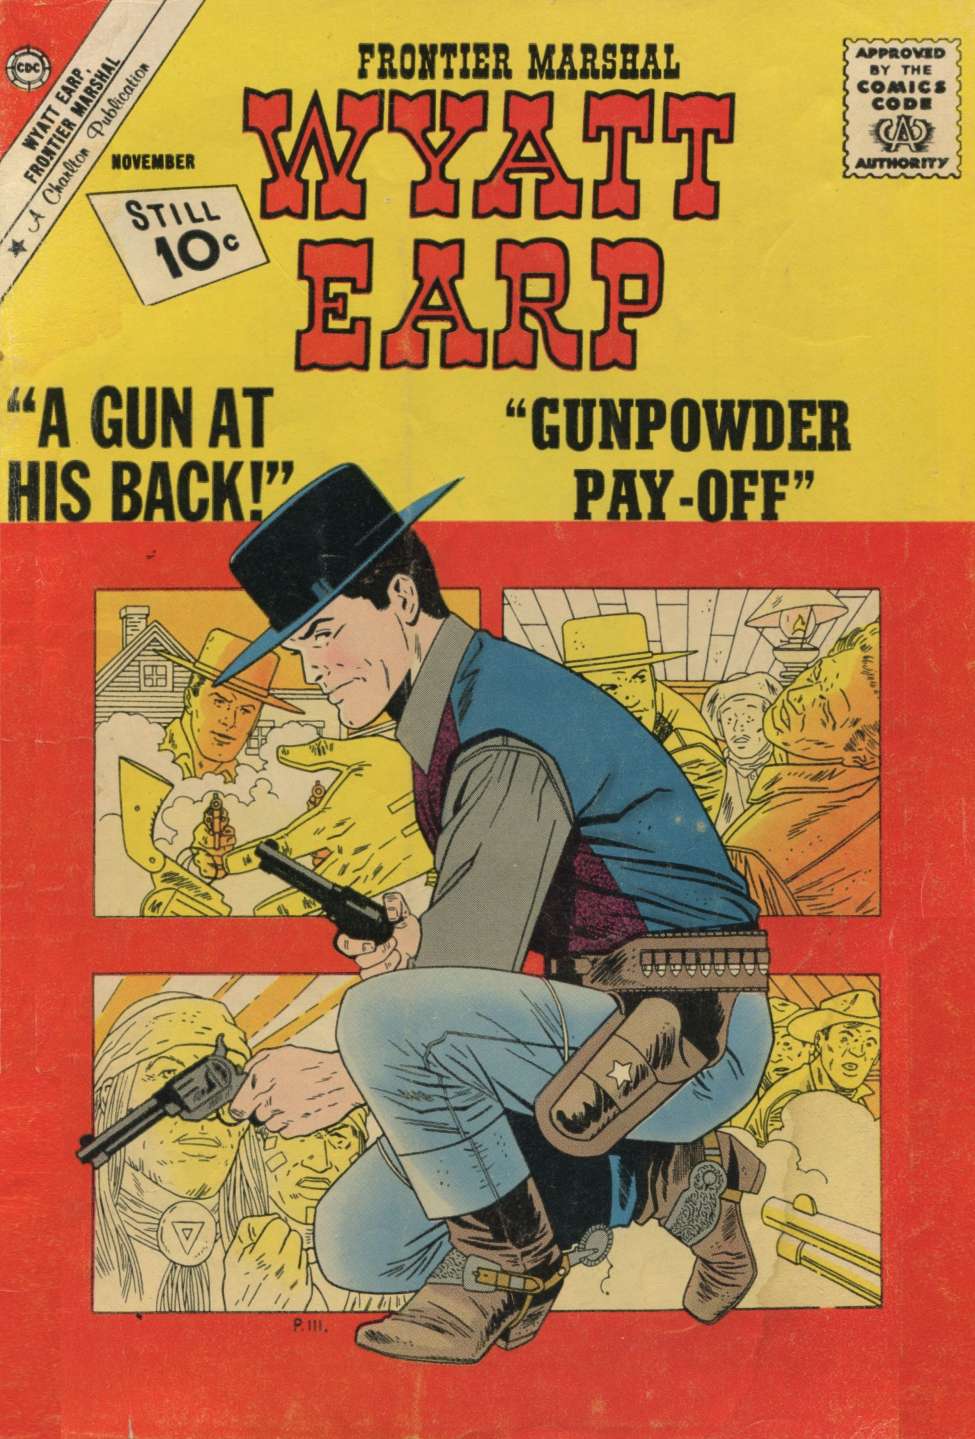 Book Cover For Wyatt Earp Frontier Marshal 39